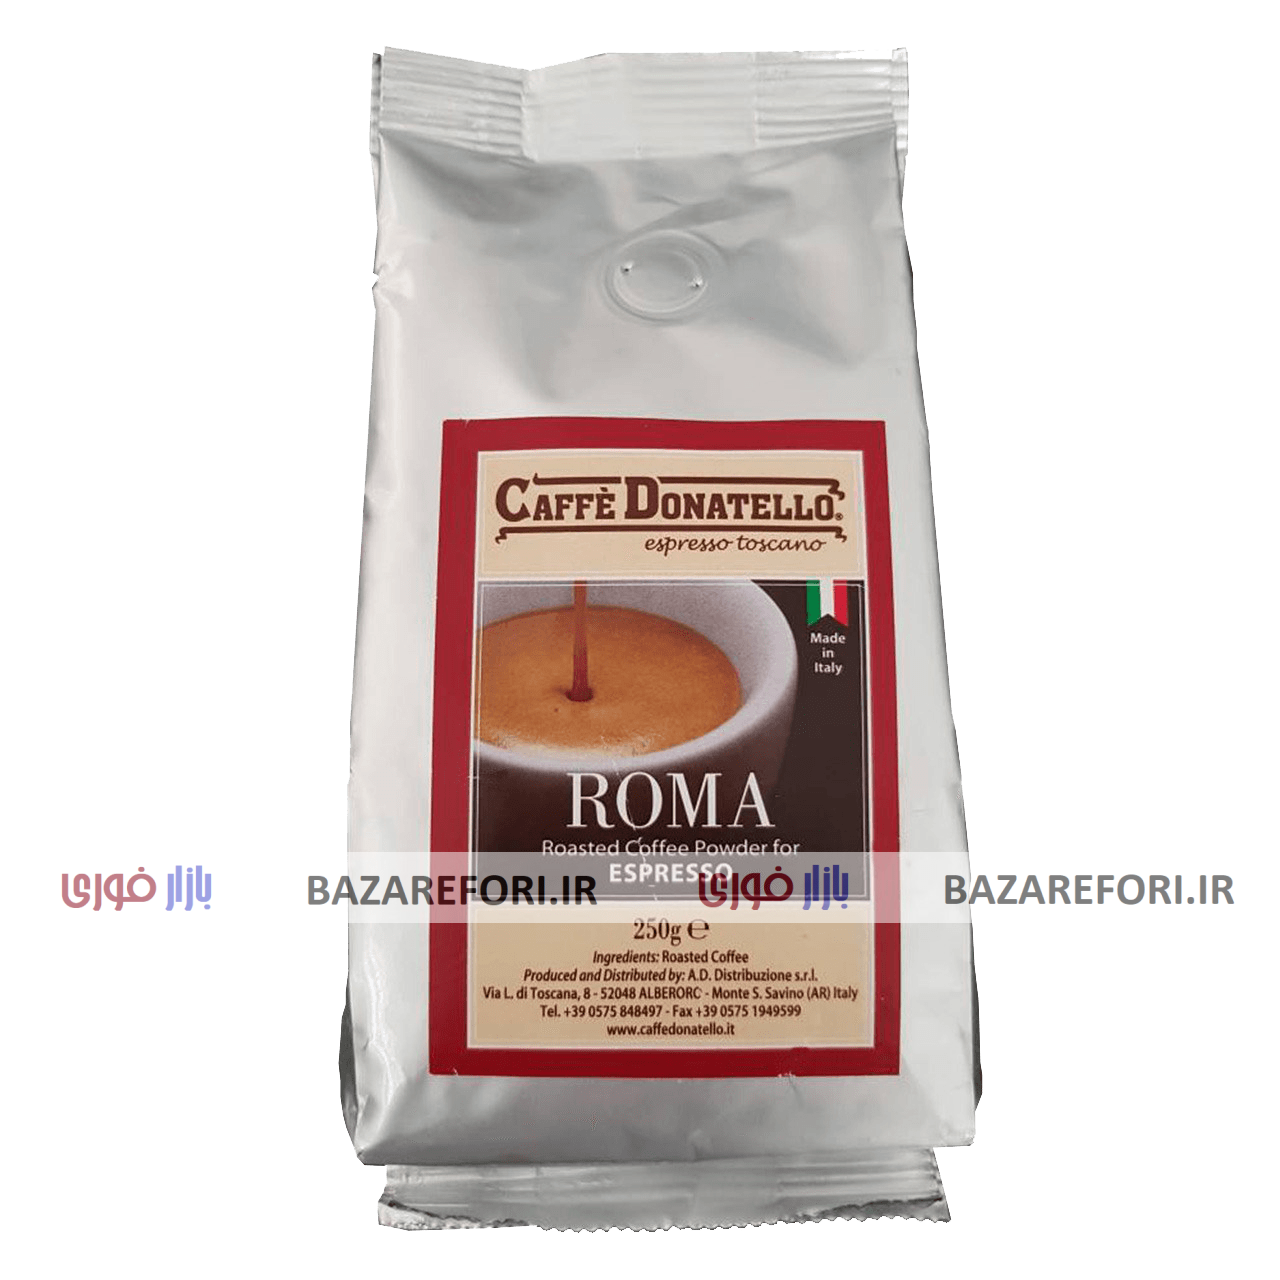 بسته قهوه کافه دوناتلو مدل روما اسپرسو